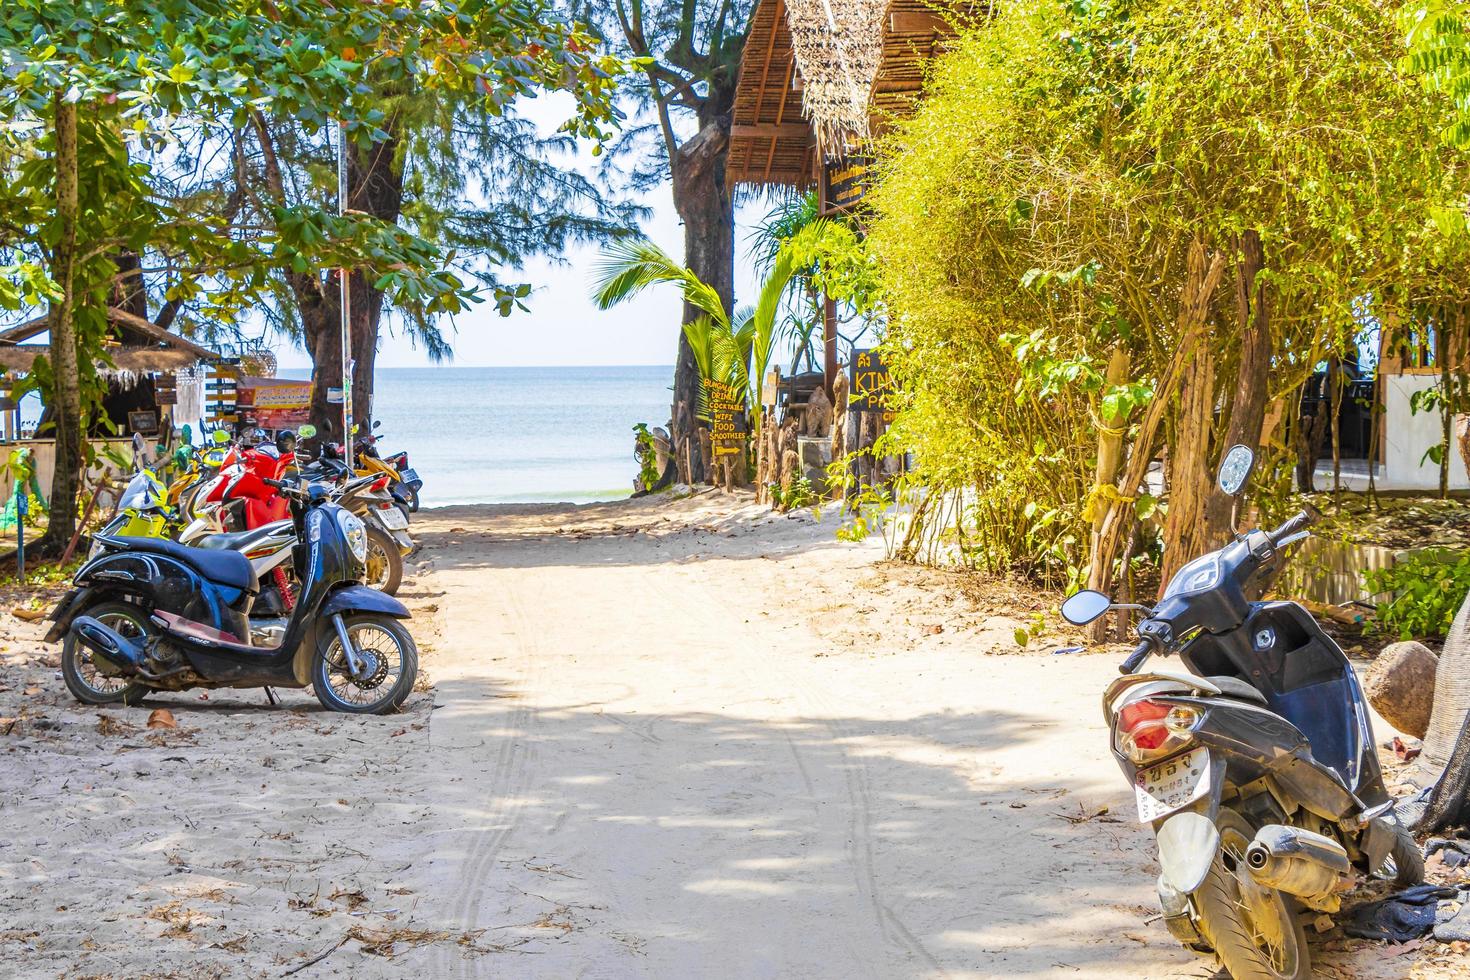 aow yai beach på Koh Phayam Island, Thailand, 2020 foto